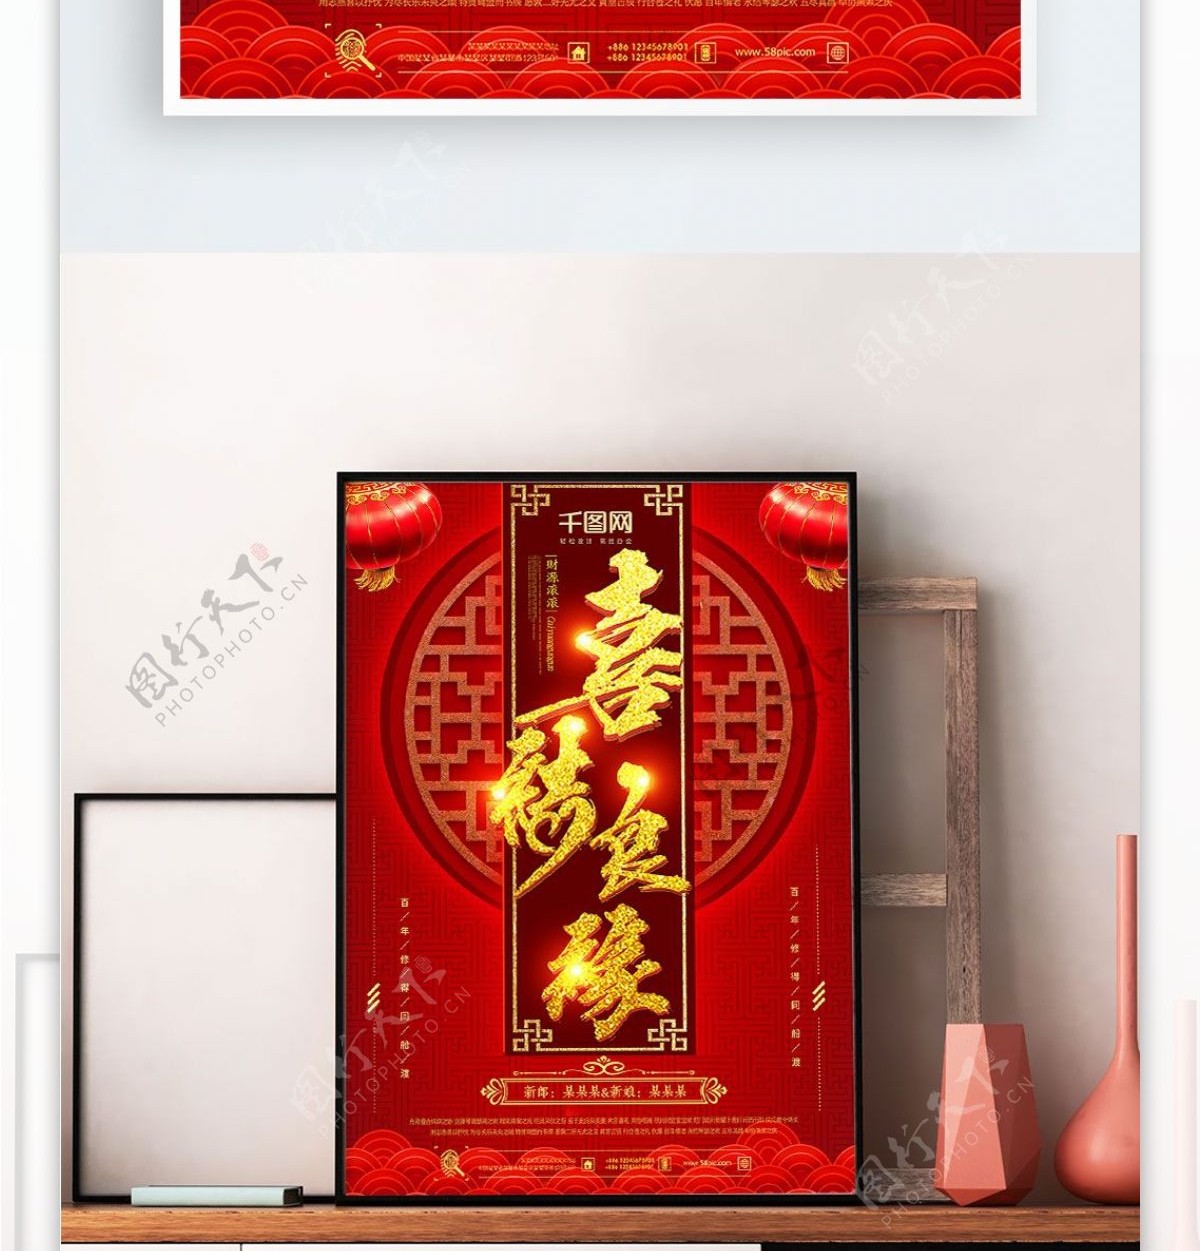 中国风红色喜庆婚礼海报